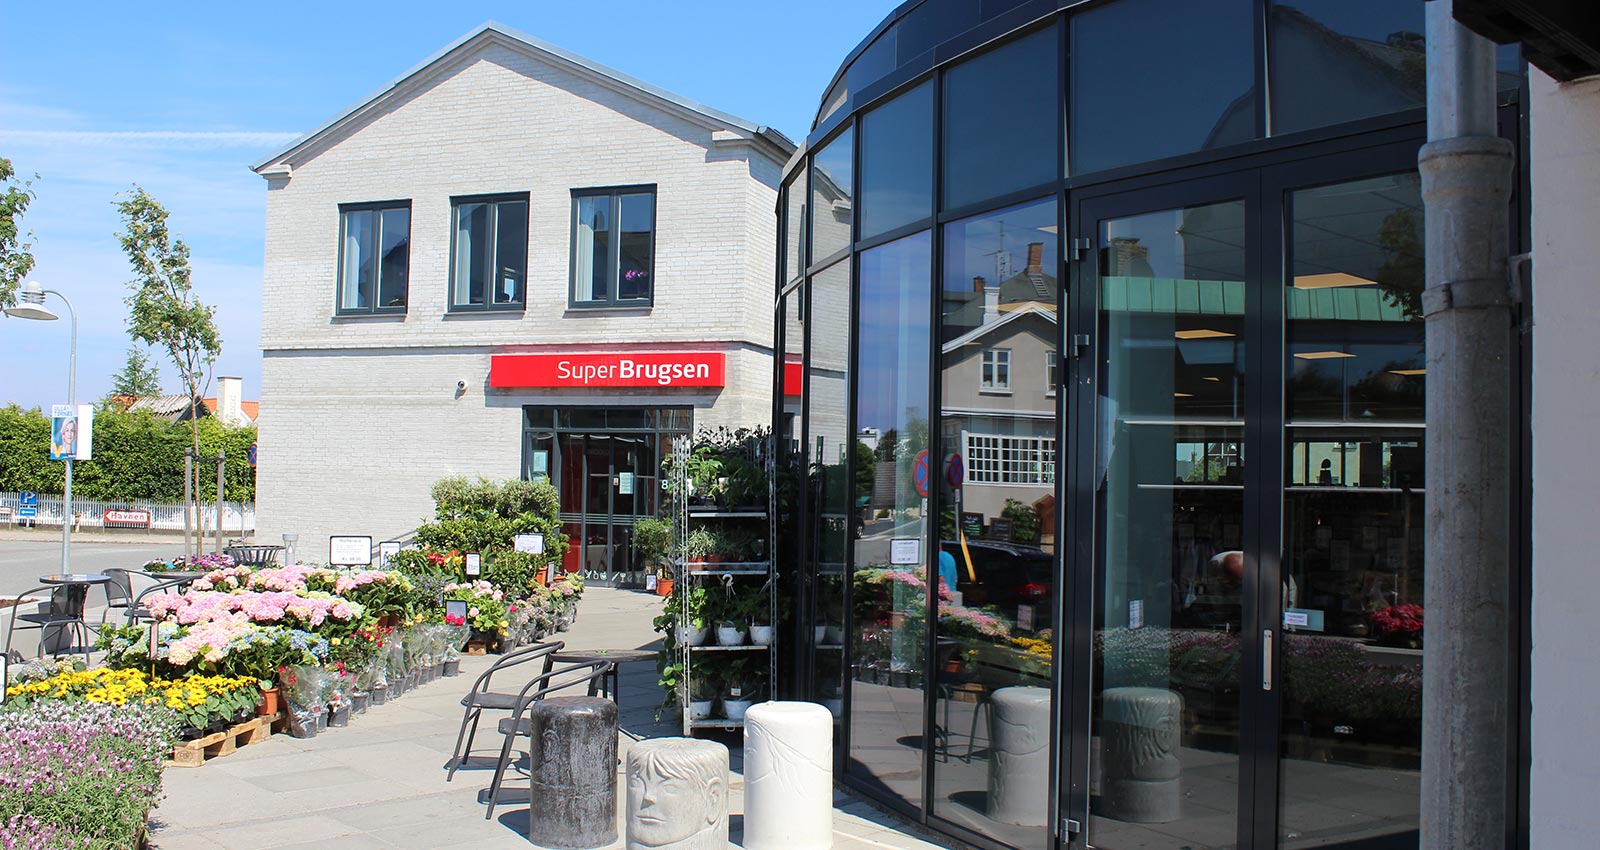 SuperBrugsen Hornbæk - Supermarkedsudvidelse indpasses elegant i bybilledet i Hornbæk